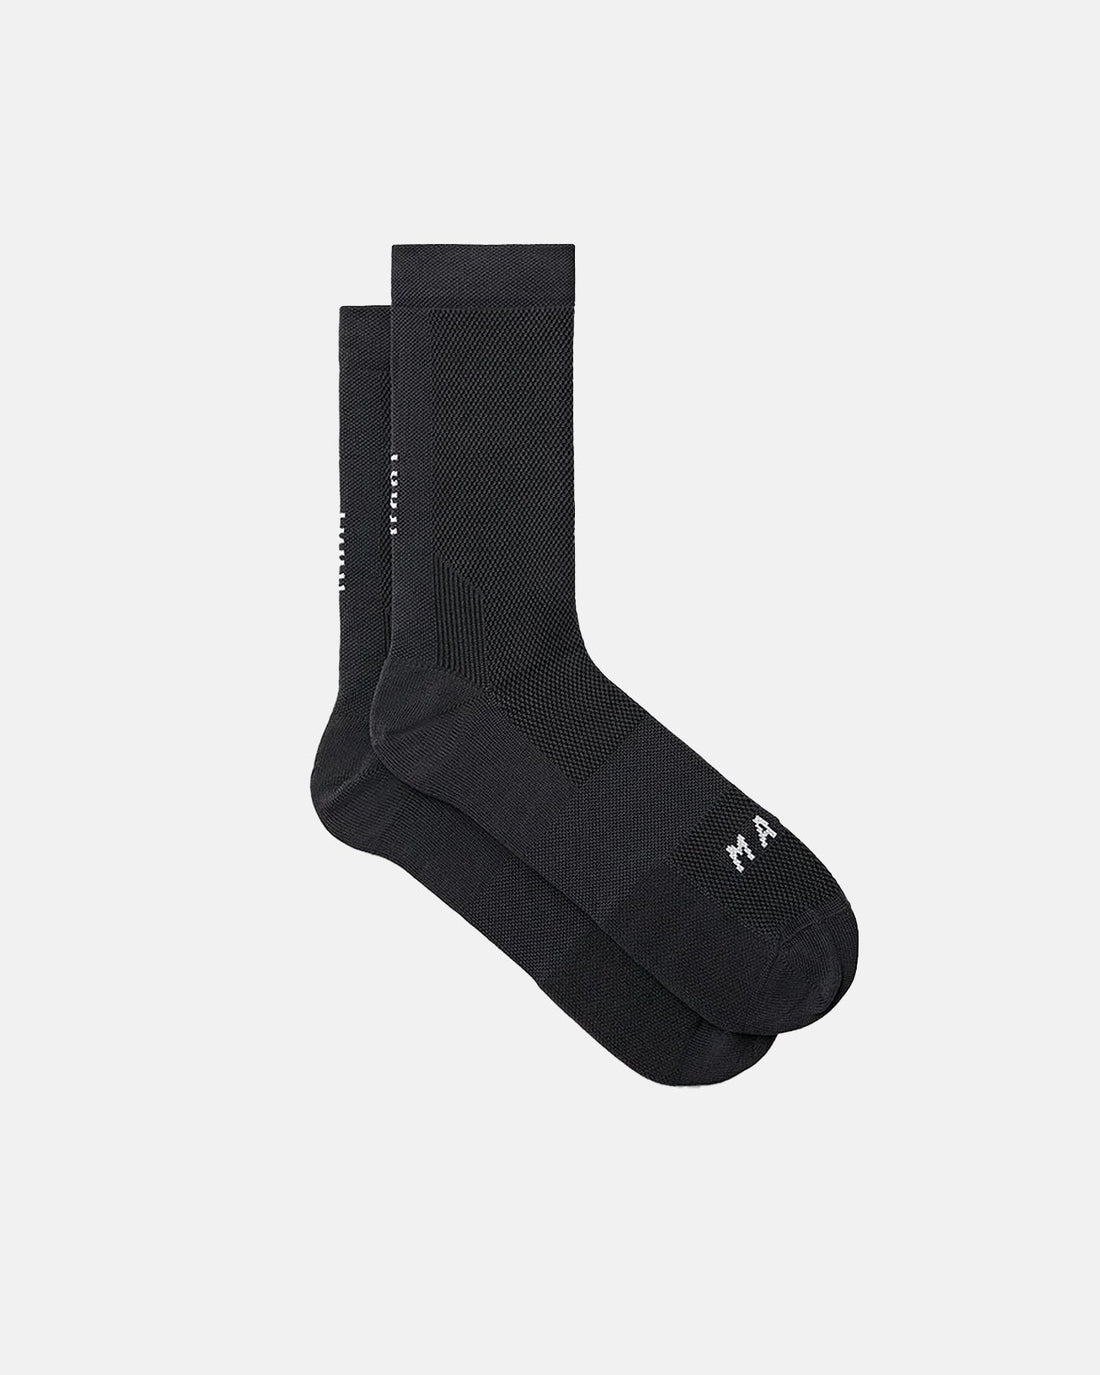 MAAP Division Sock - Black/Black